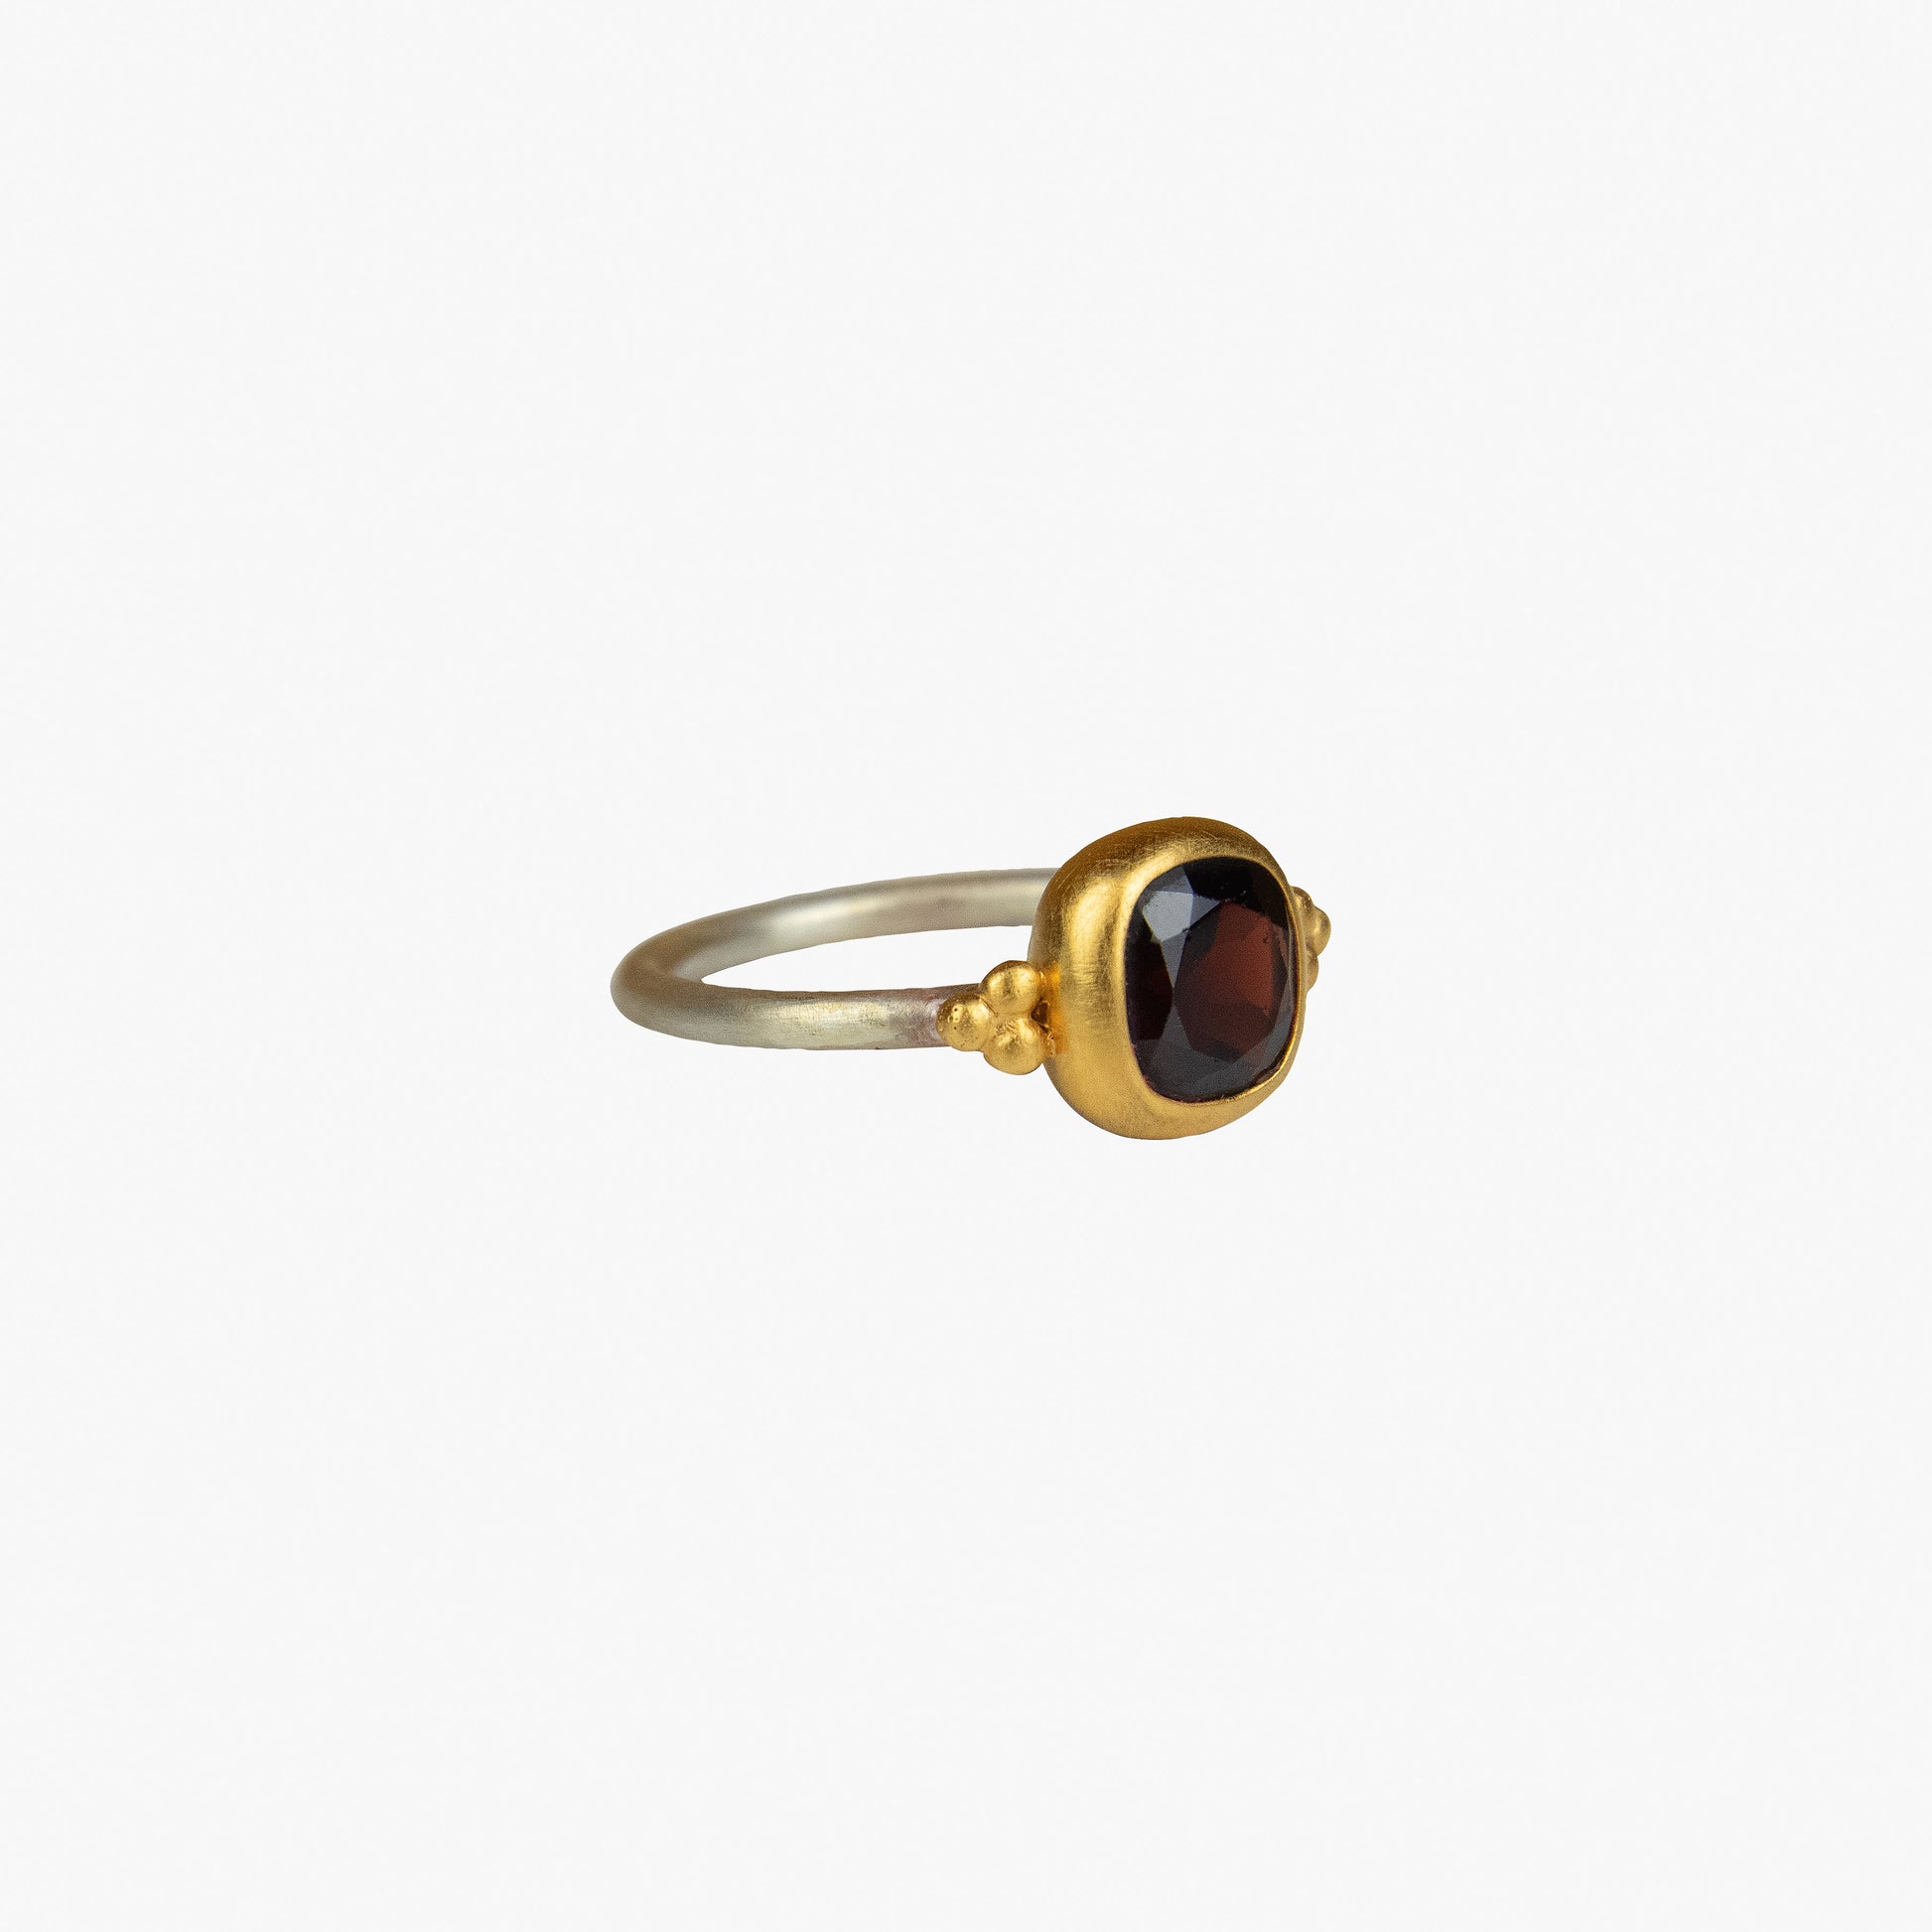 Der Ring KAYA besteht aus Sterlingsilber, einer galvanischen Vergoldung sowie einem Granat-Stein